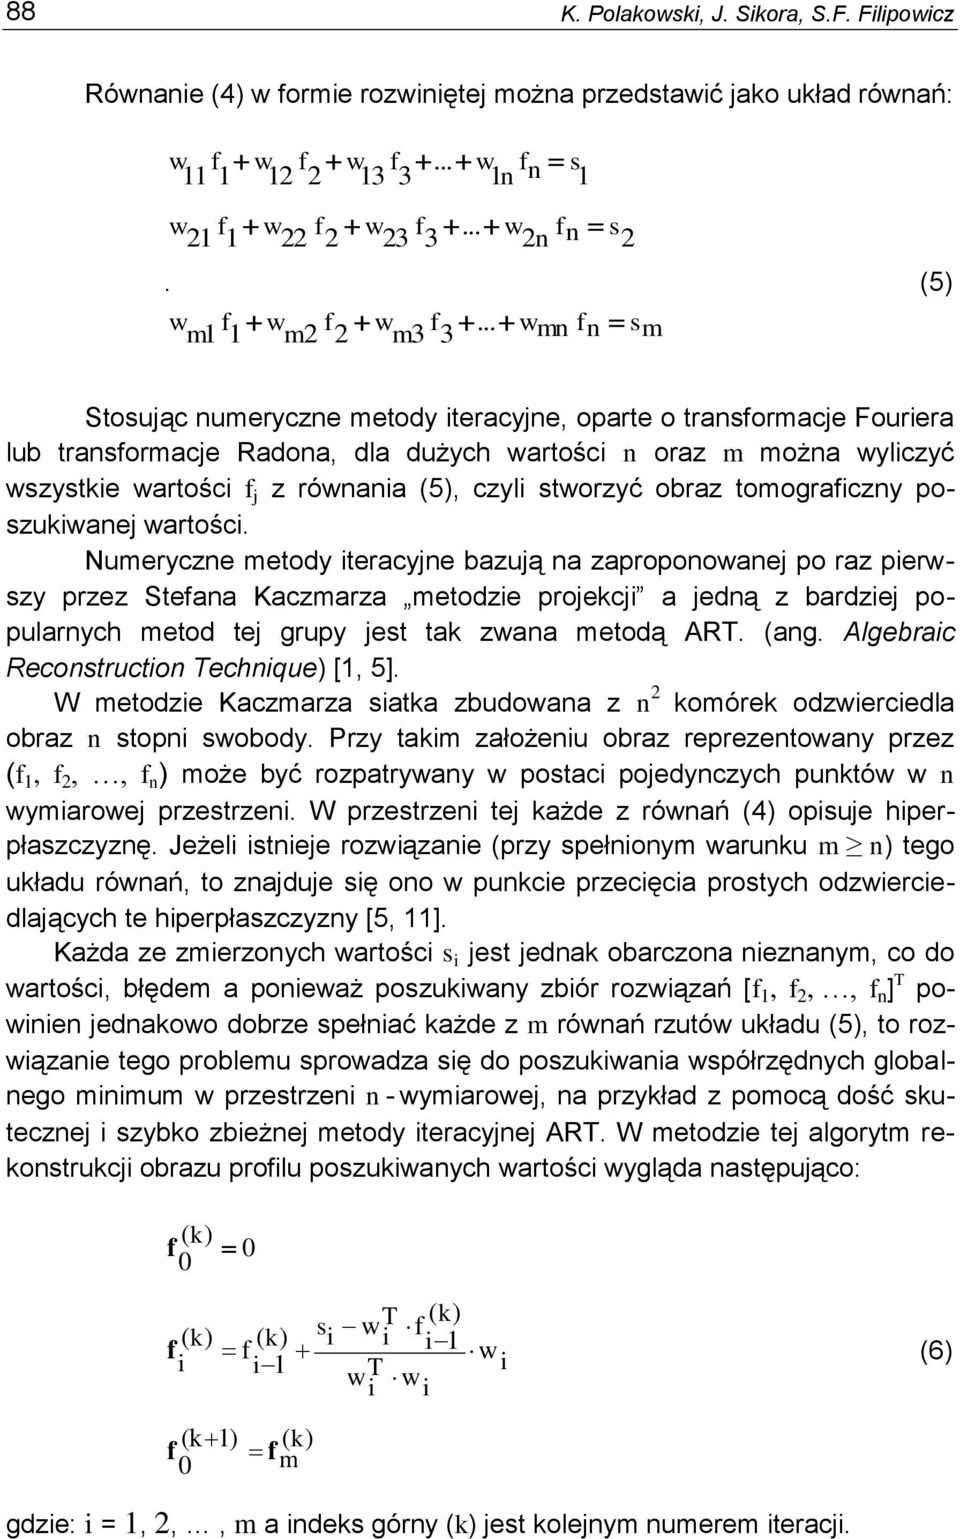 .. wmn fn sm Stosuąc numeryczne metody iteracyne, oparte o transformace Fouriera lub transformace Radona, dla dużych wartości n oraz m można wyliczyć wszystkie wartości f z równania (5), czyli